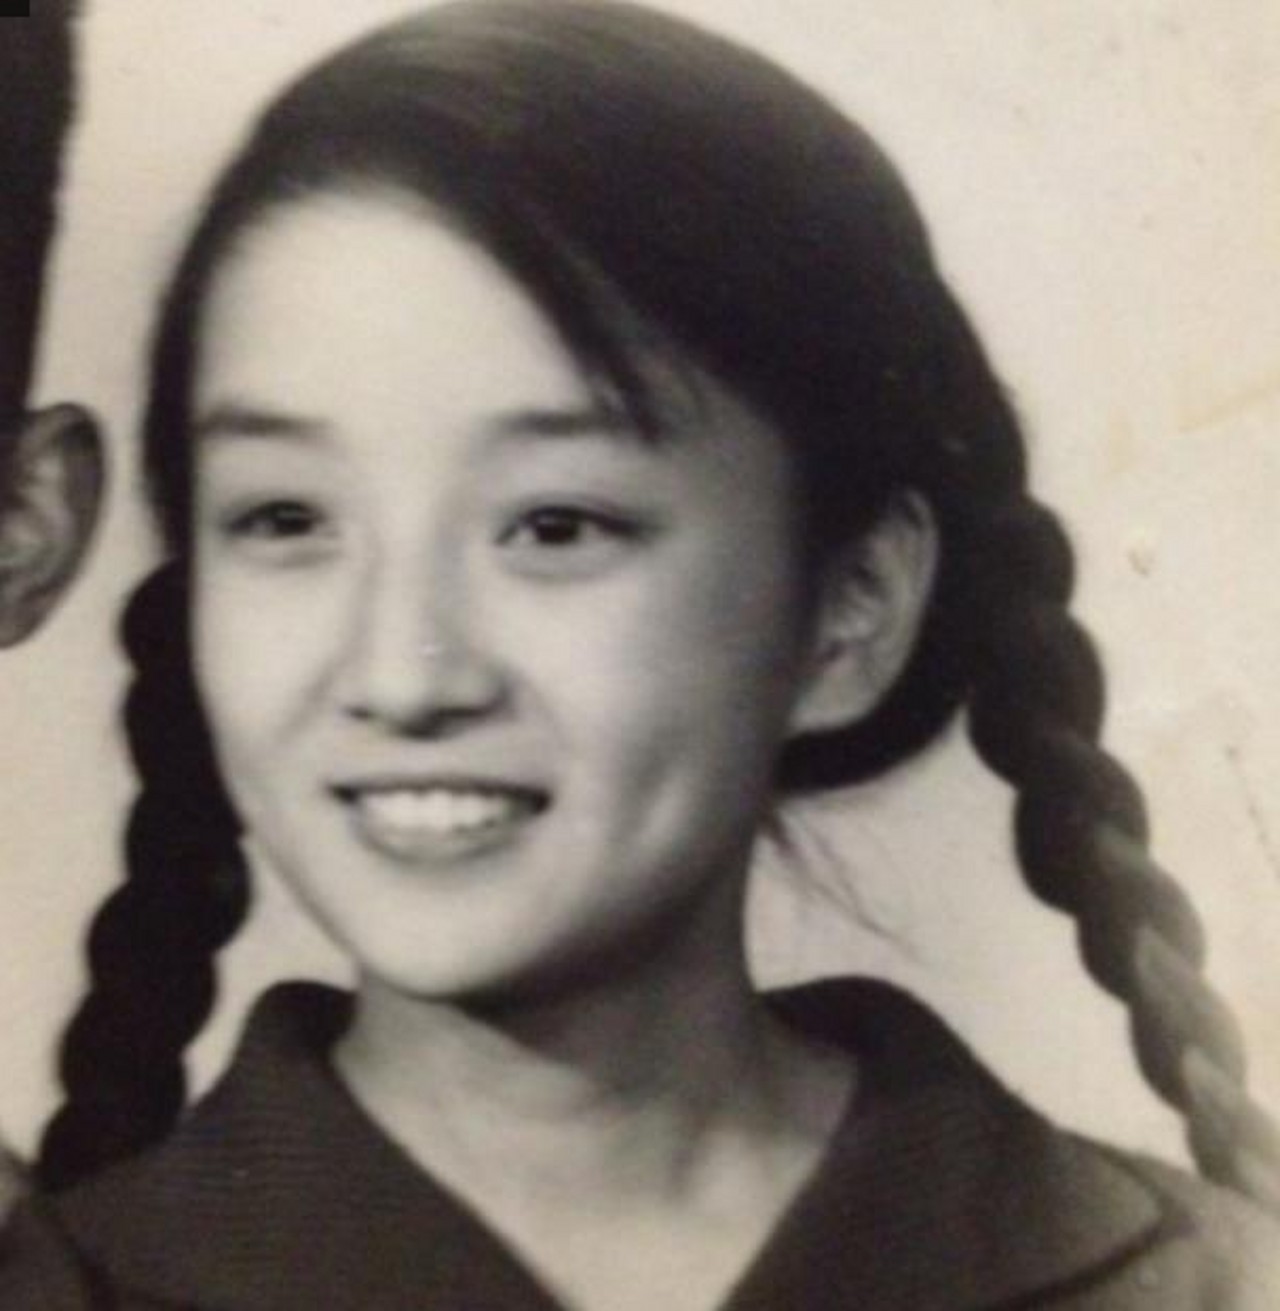 摄影师拍下80年代中国女孩的一组老照片:像素低才是天然滤镜!